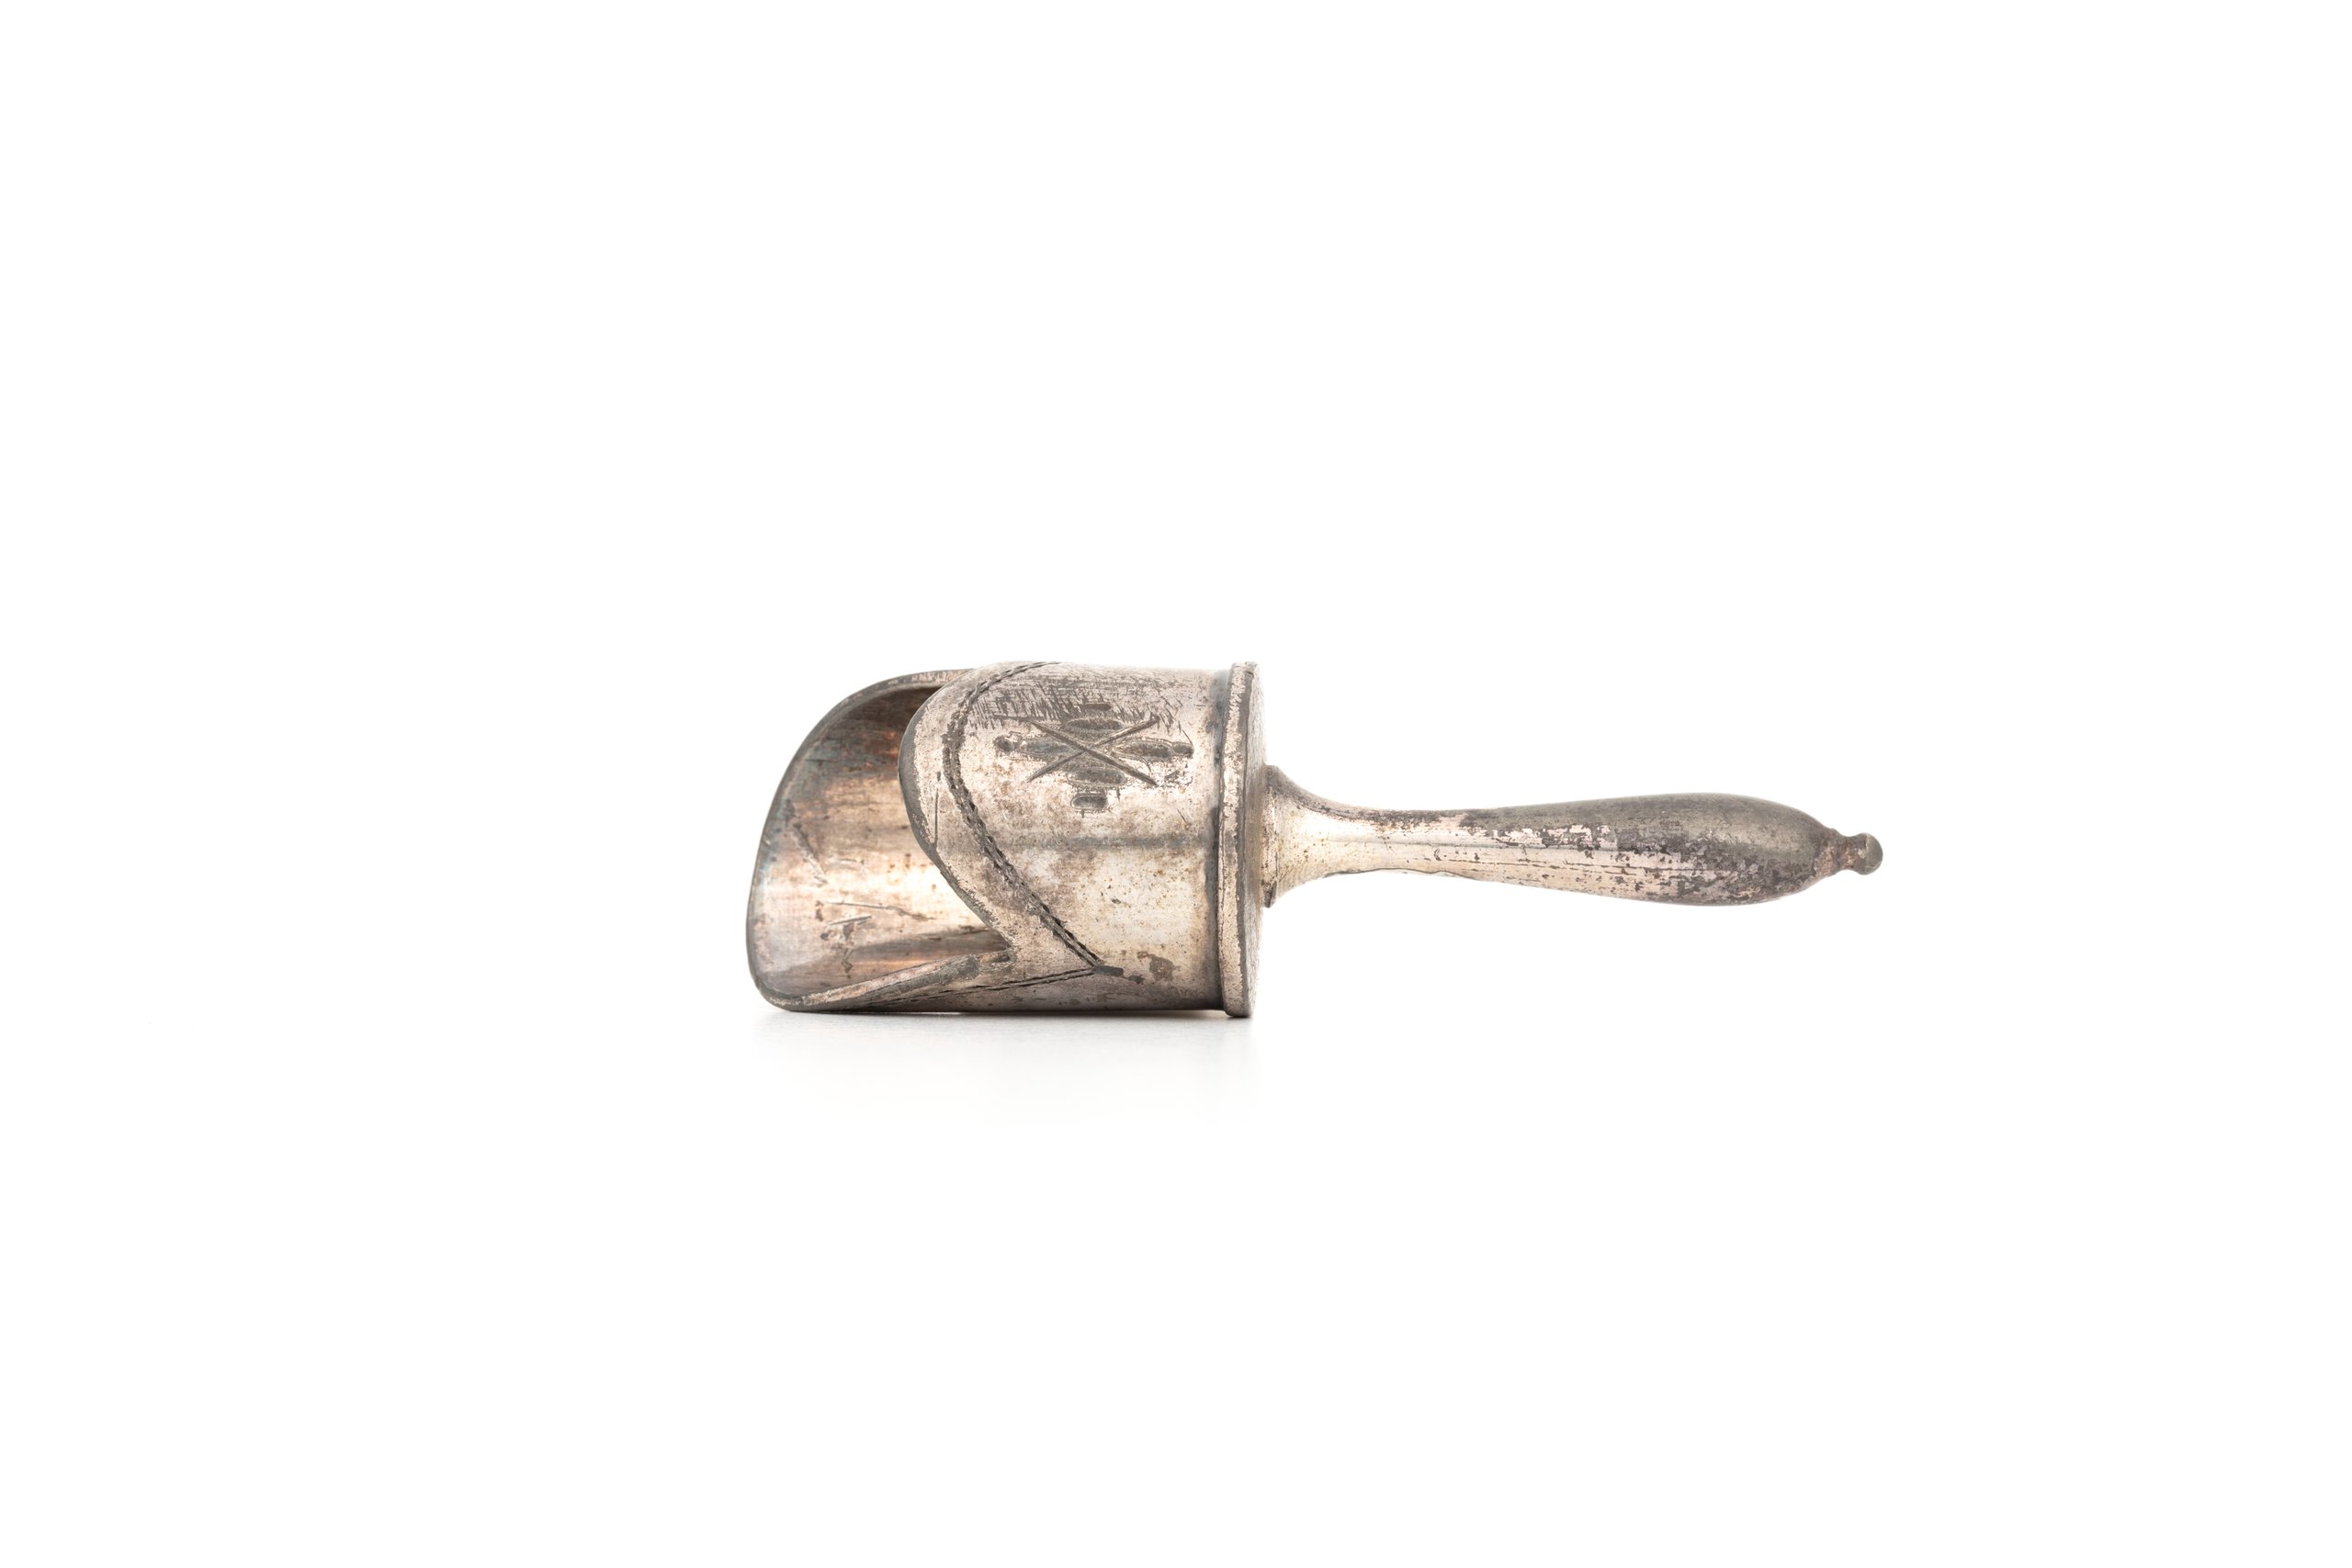 Silver trowel for sugar scuttle by Thomas Otley & Sons Ltd